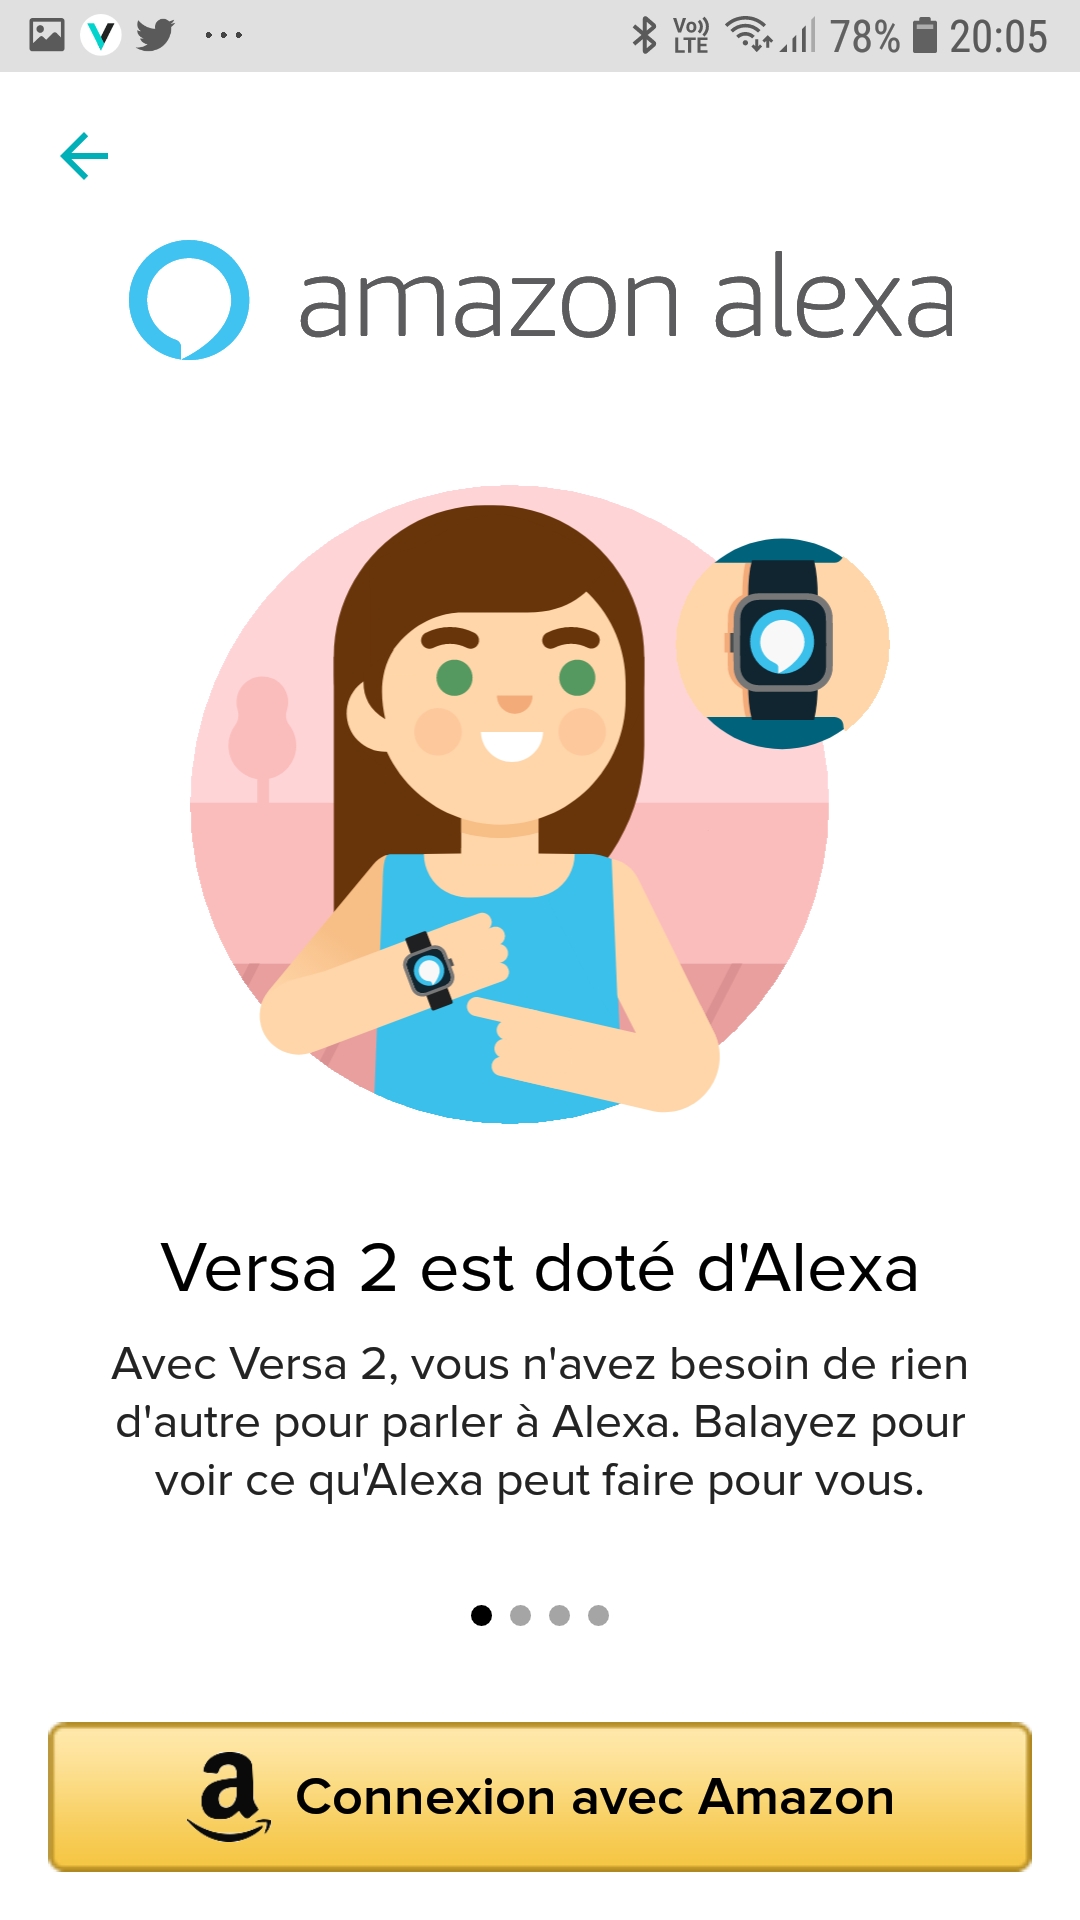 Test Montre connectée Fitbit Versa 2 : Alexa au poignet – Les Alexiens